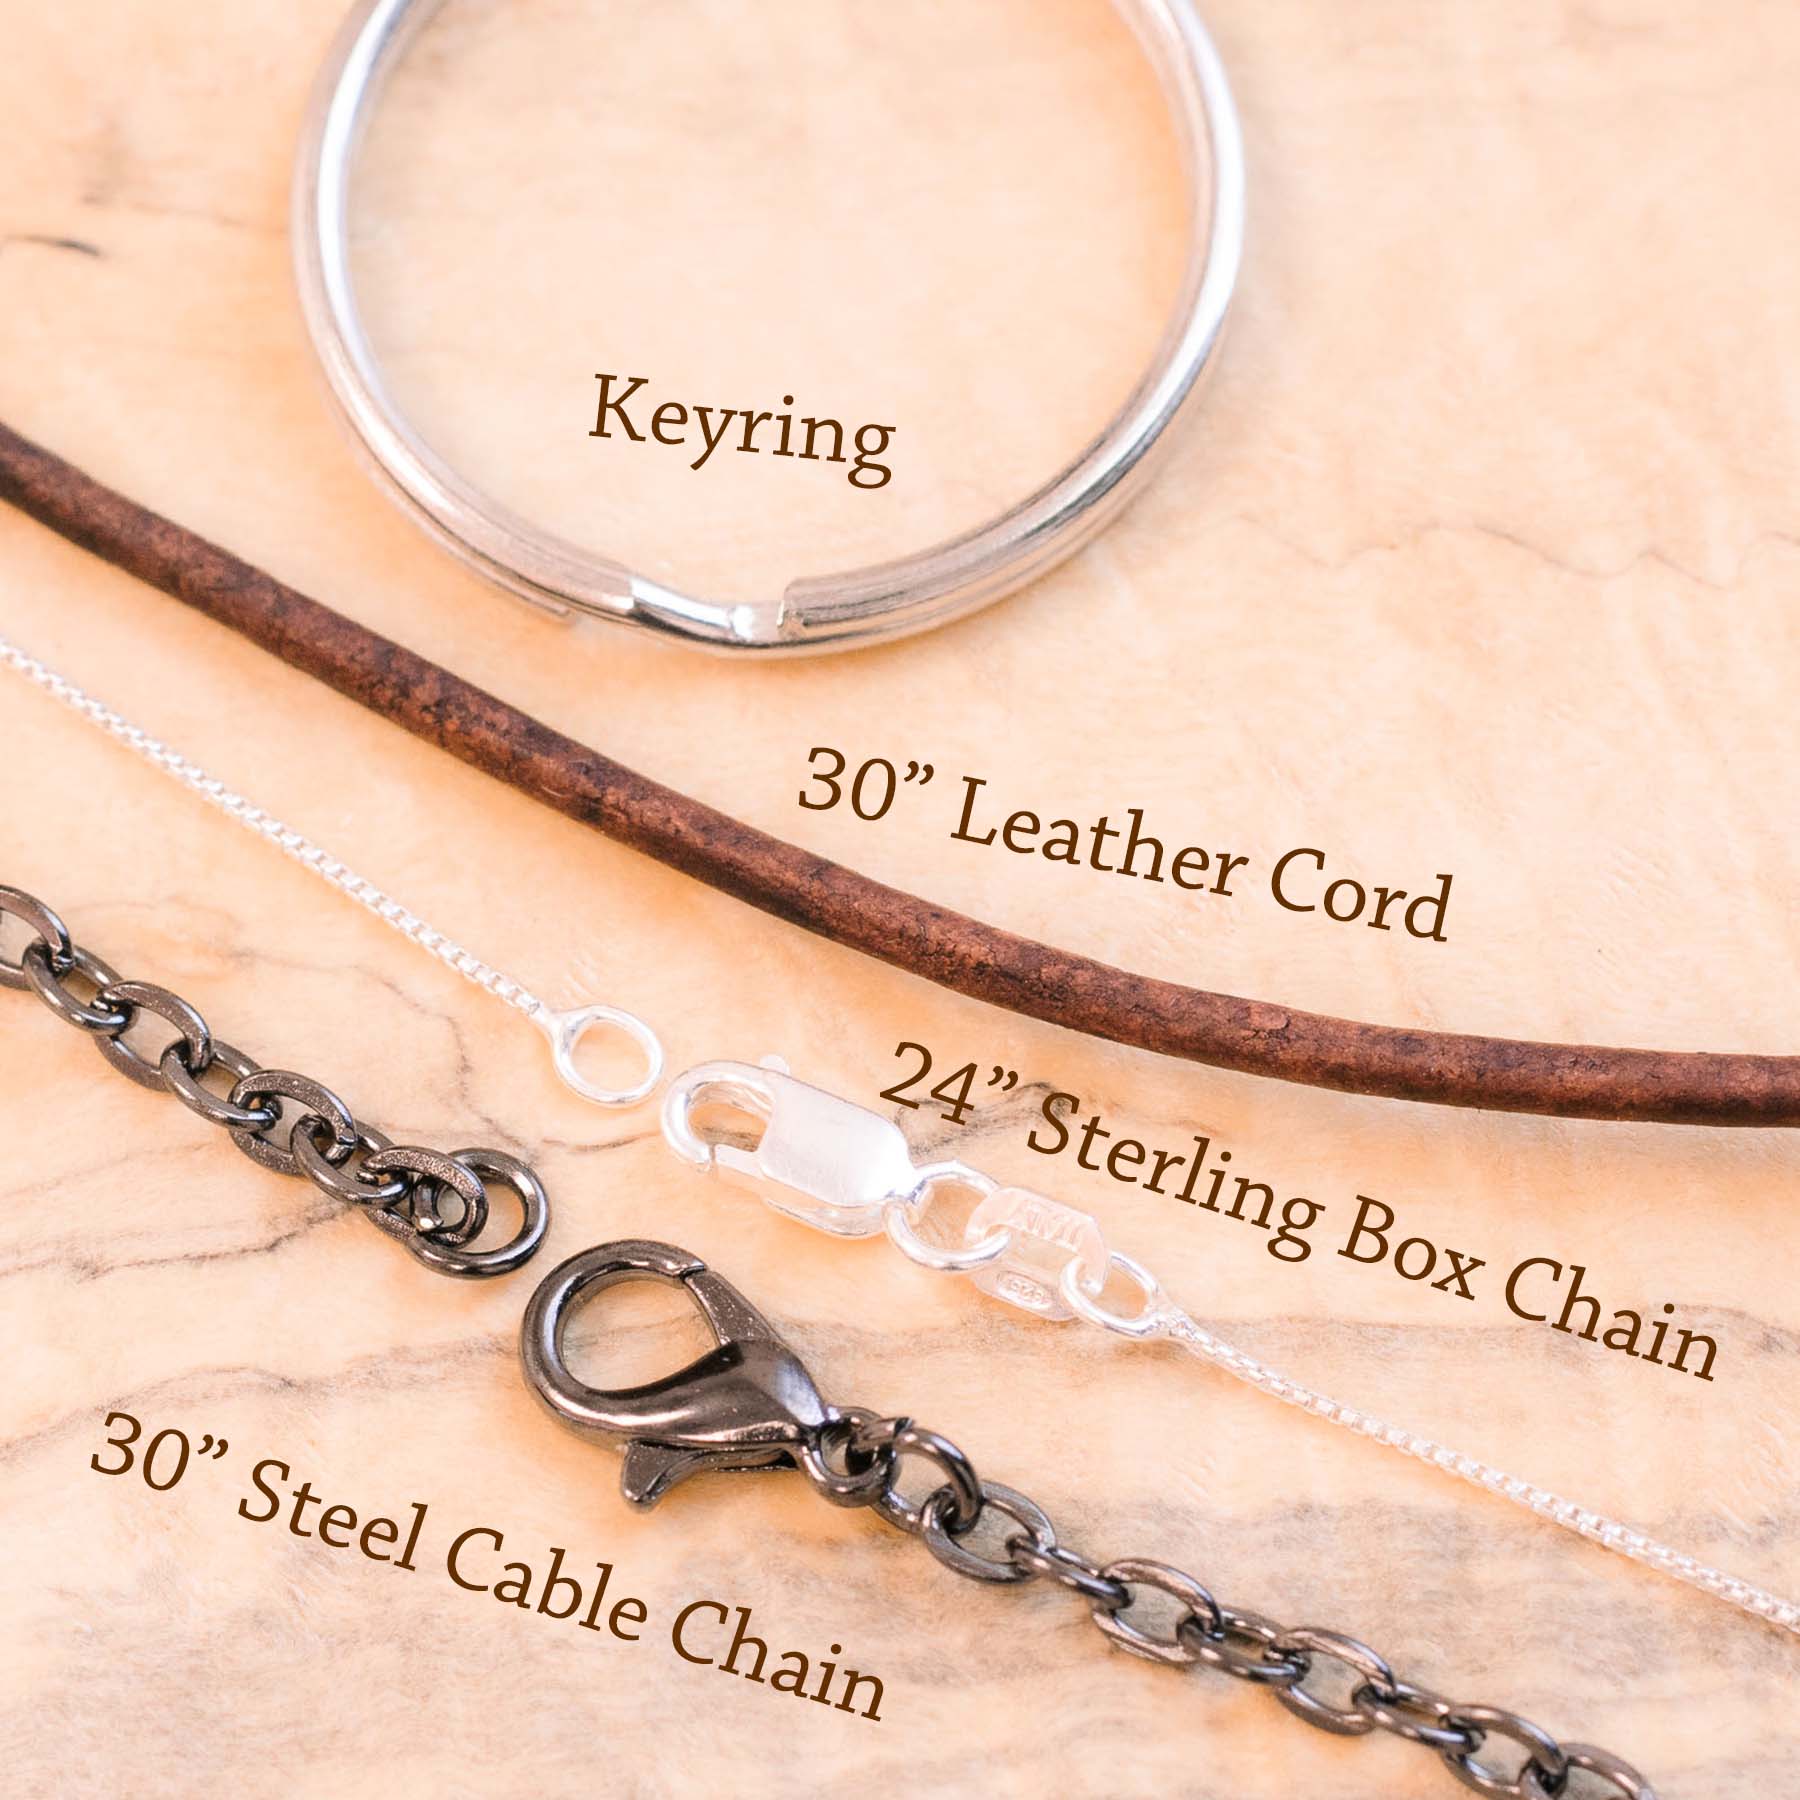 Memento Mori Copper Pendant or Charm- Memento Vivere Reminder Jewelry